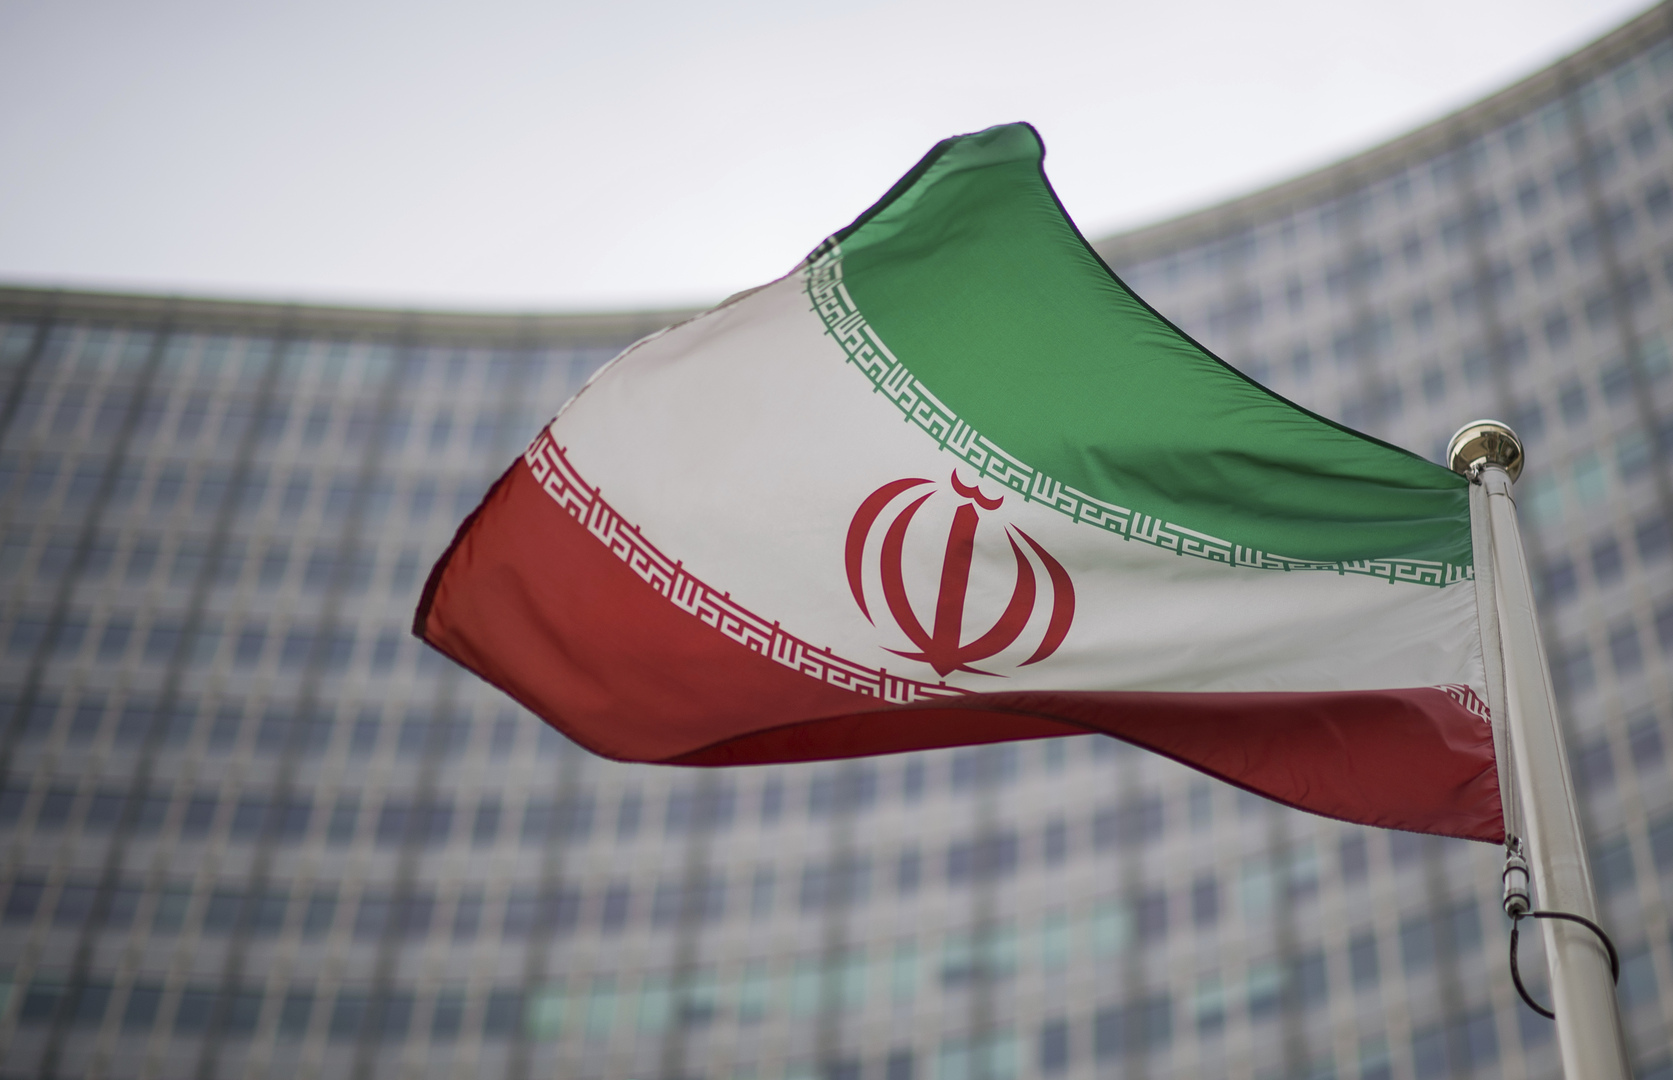 البنك المركزي الإيراني يبيع 300 مليون يورو أرصدة مودعة بالعراق